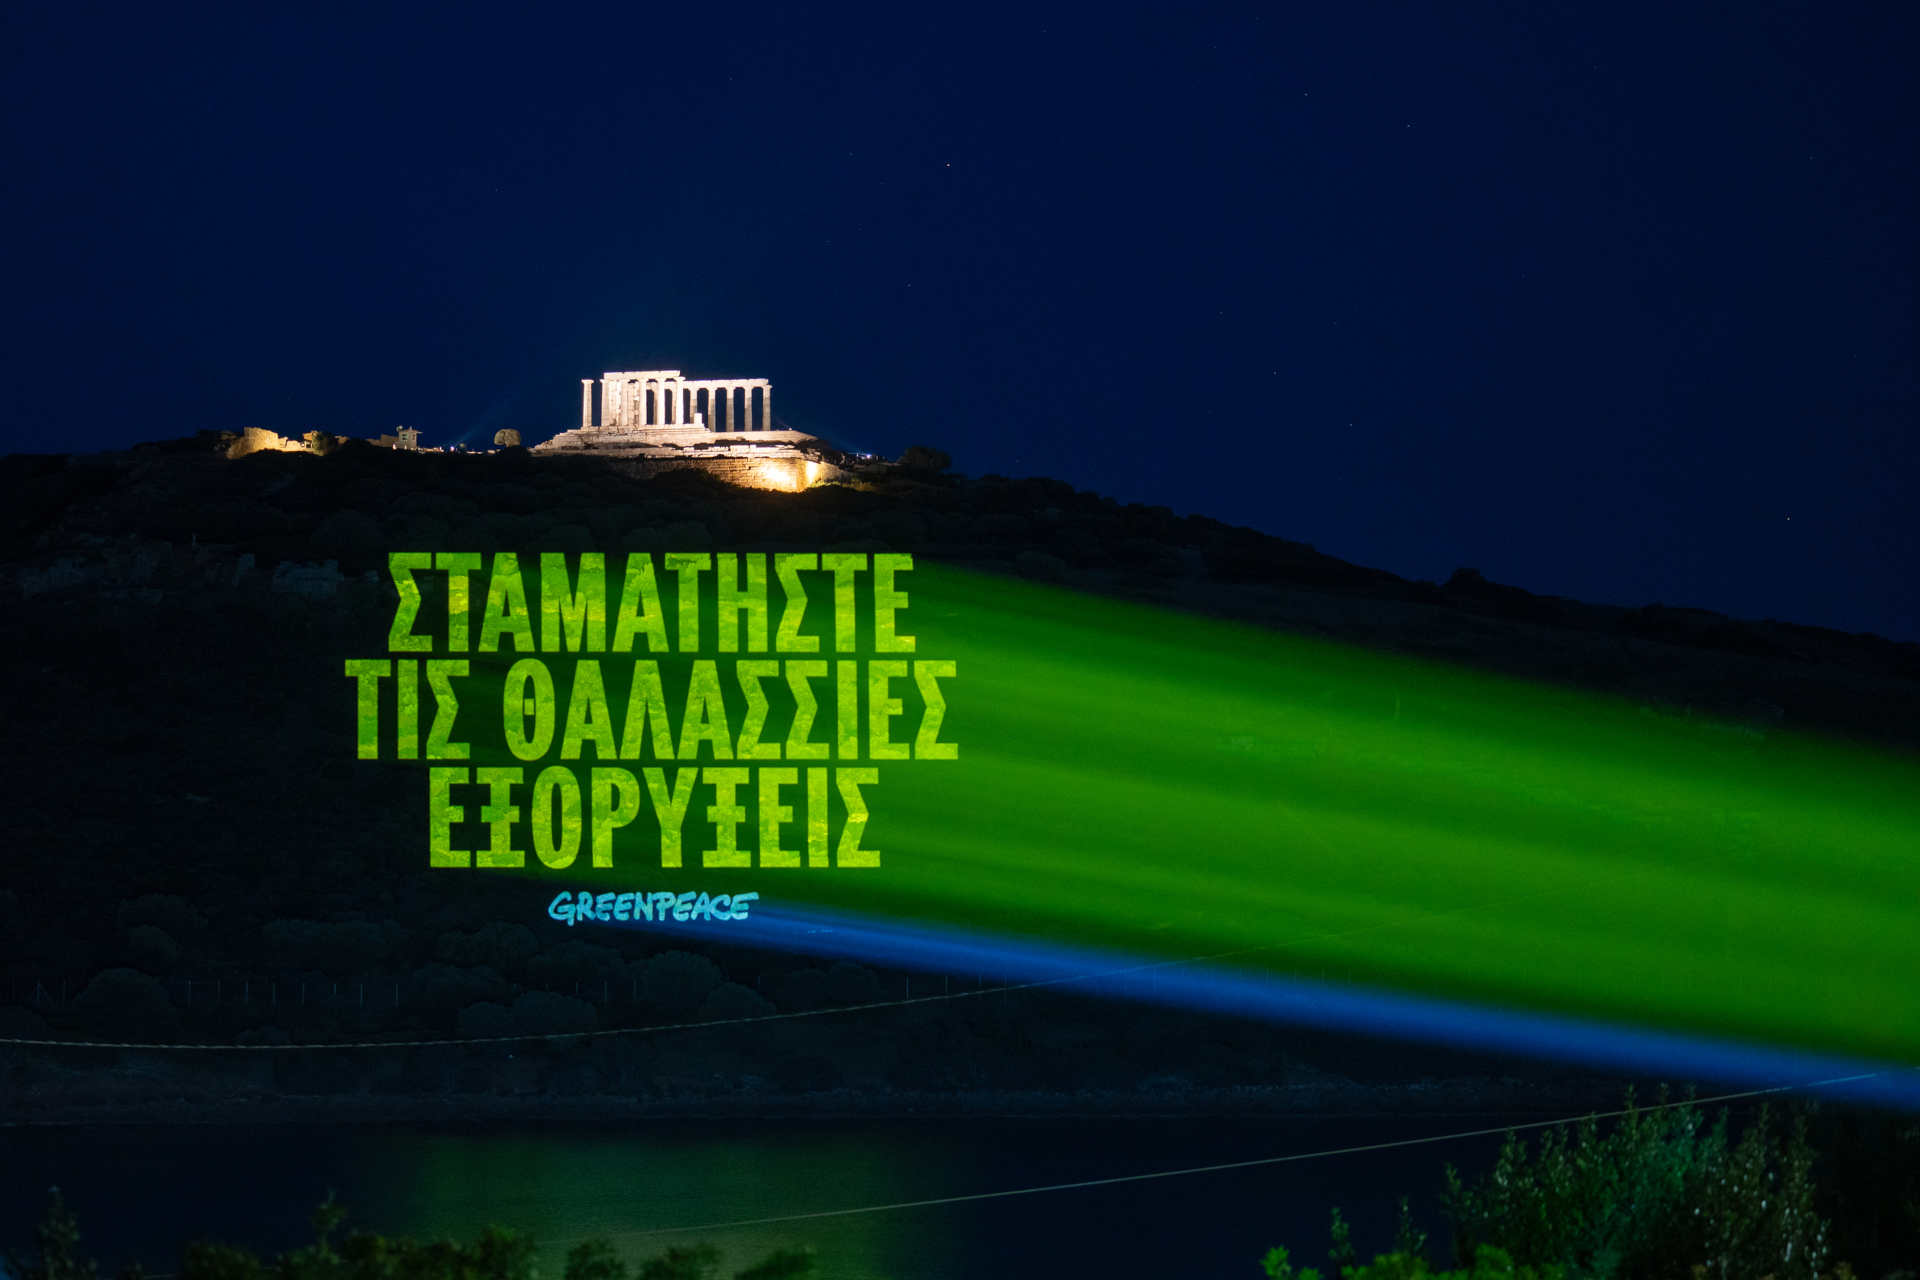 Греция: грек тилиндеги билдирүү